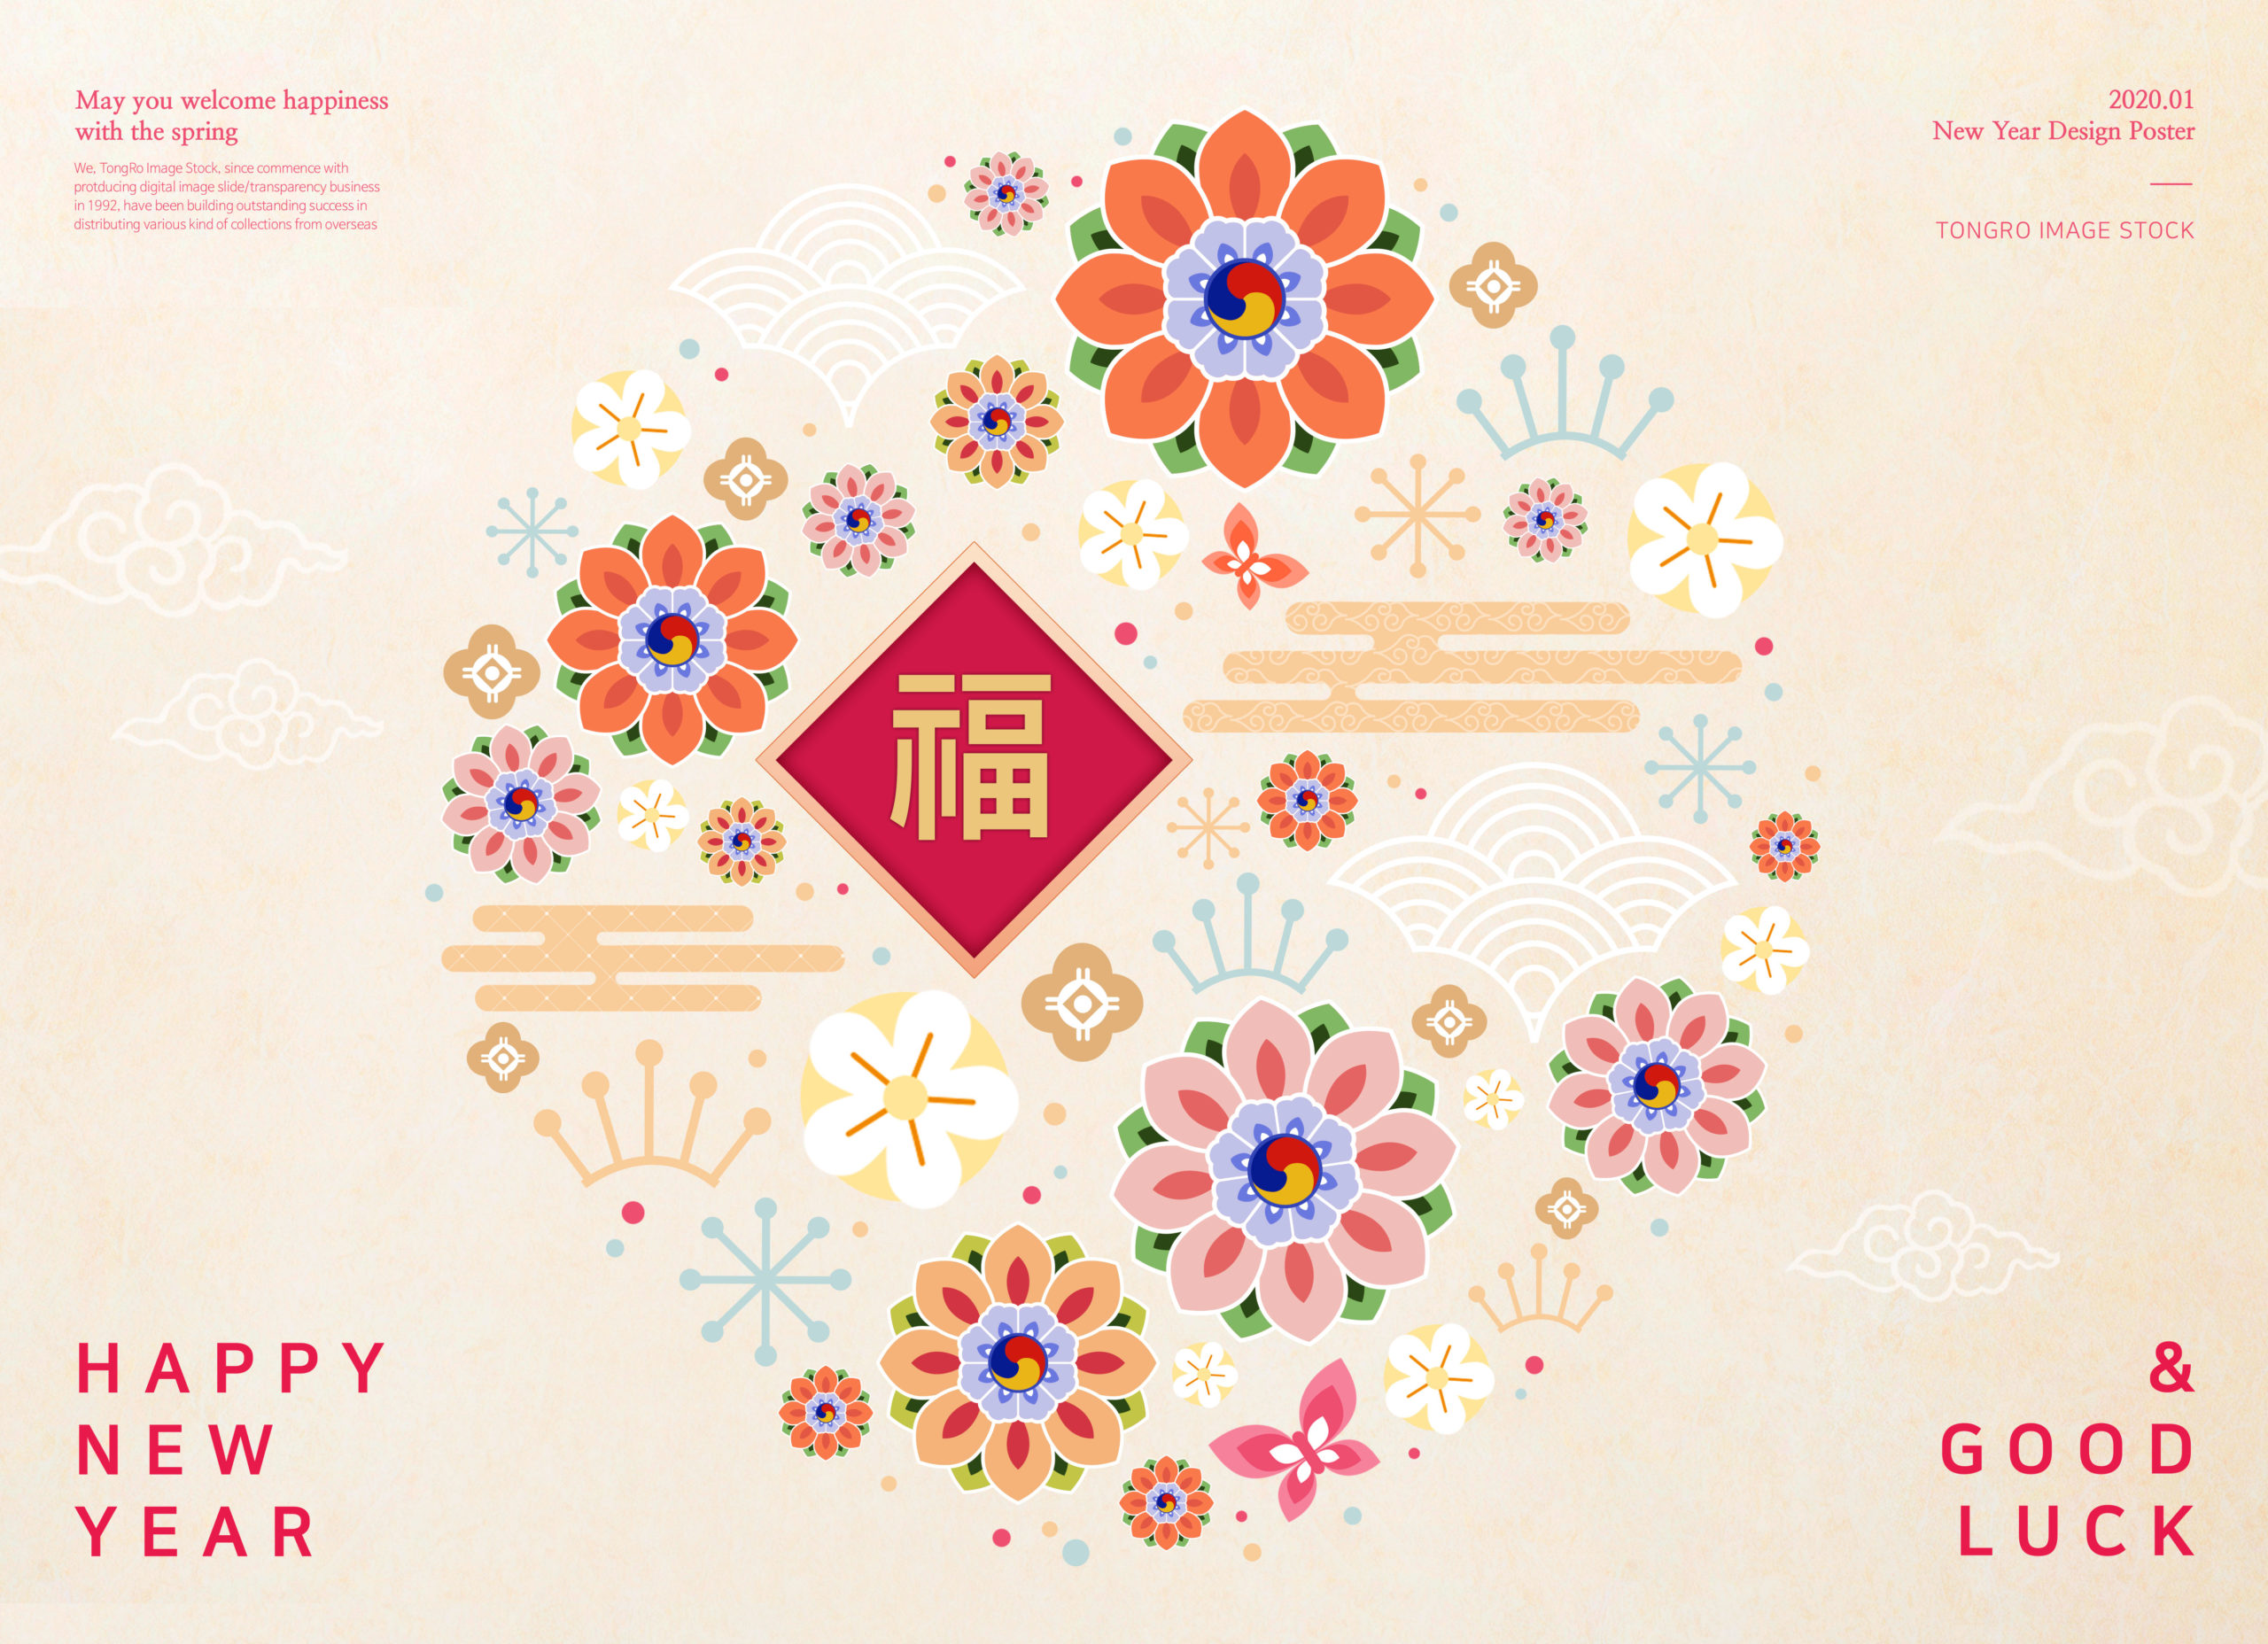 新春花卉元素新年海报PSD素材第一素材精选模板插图